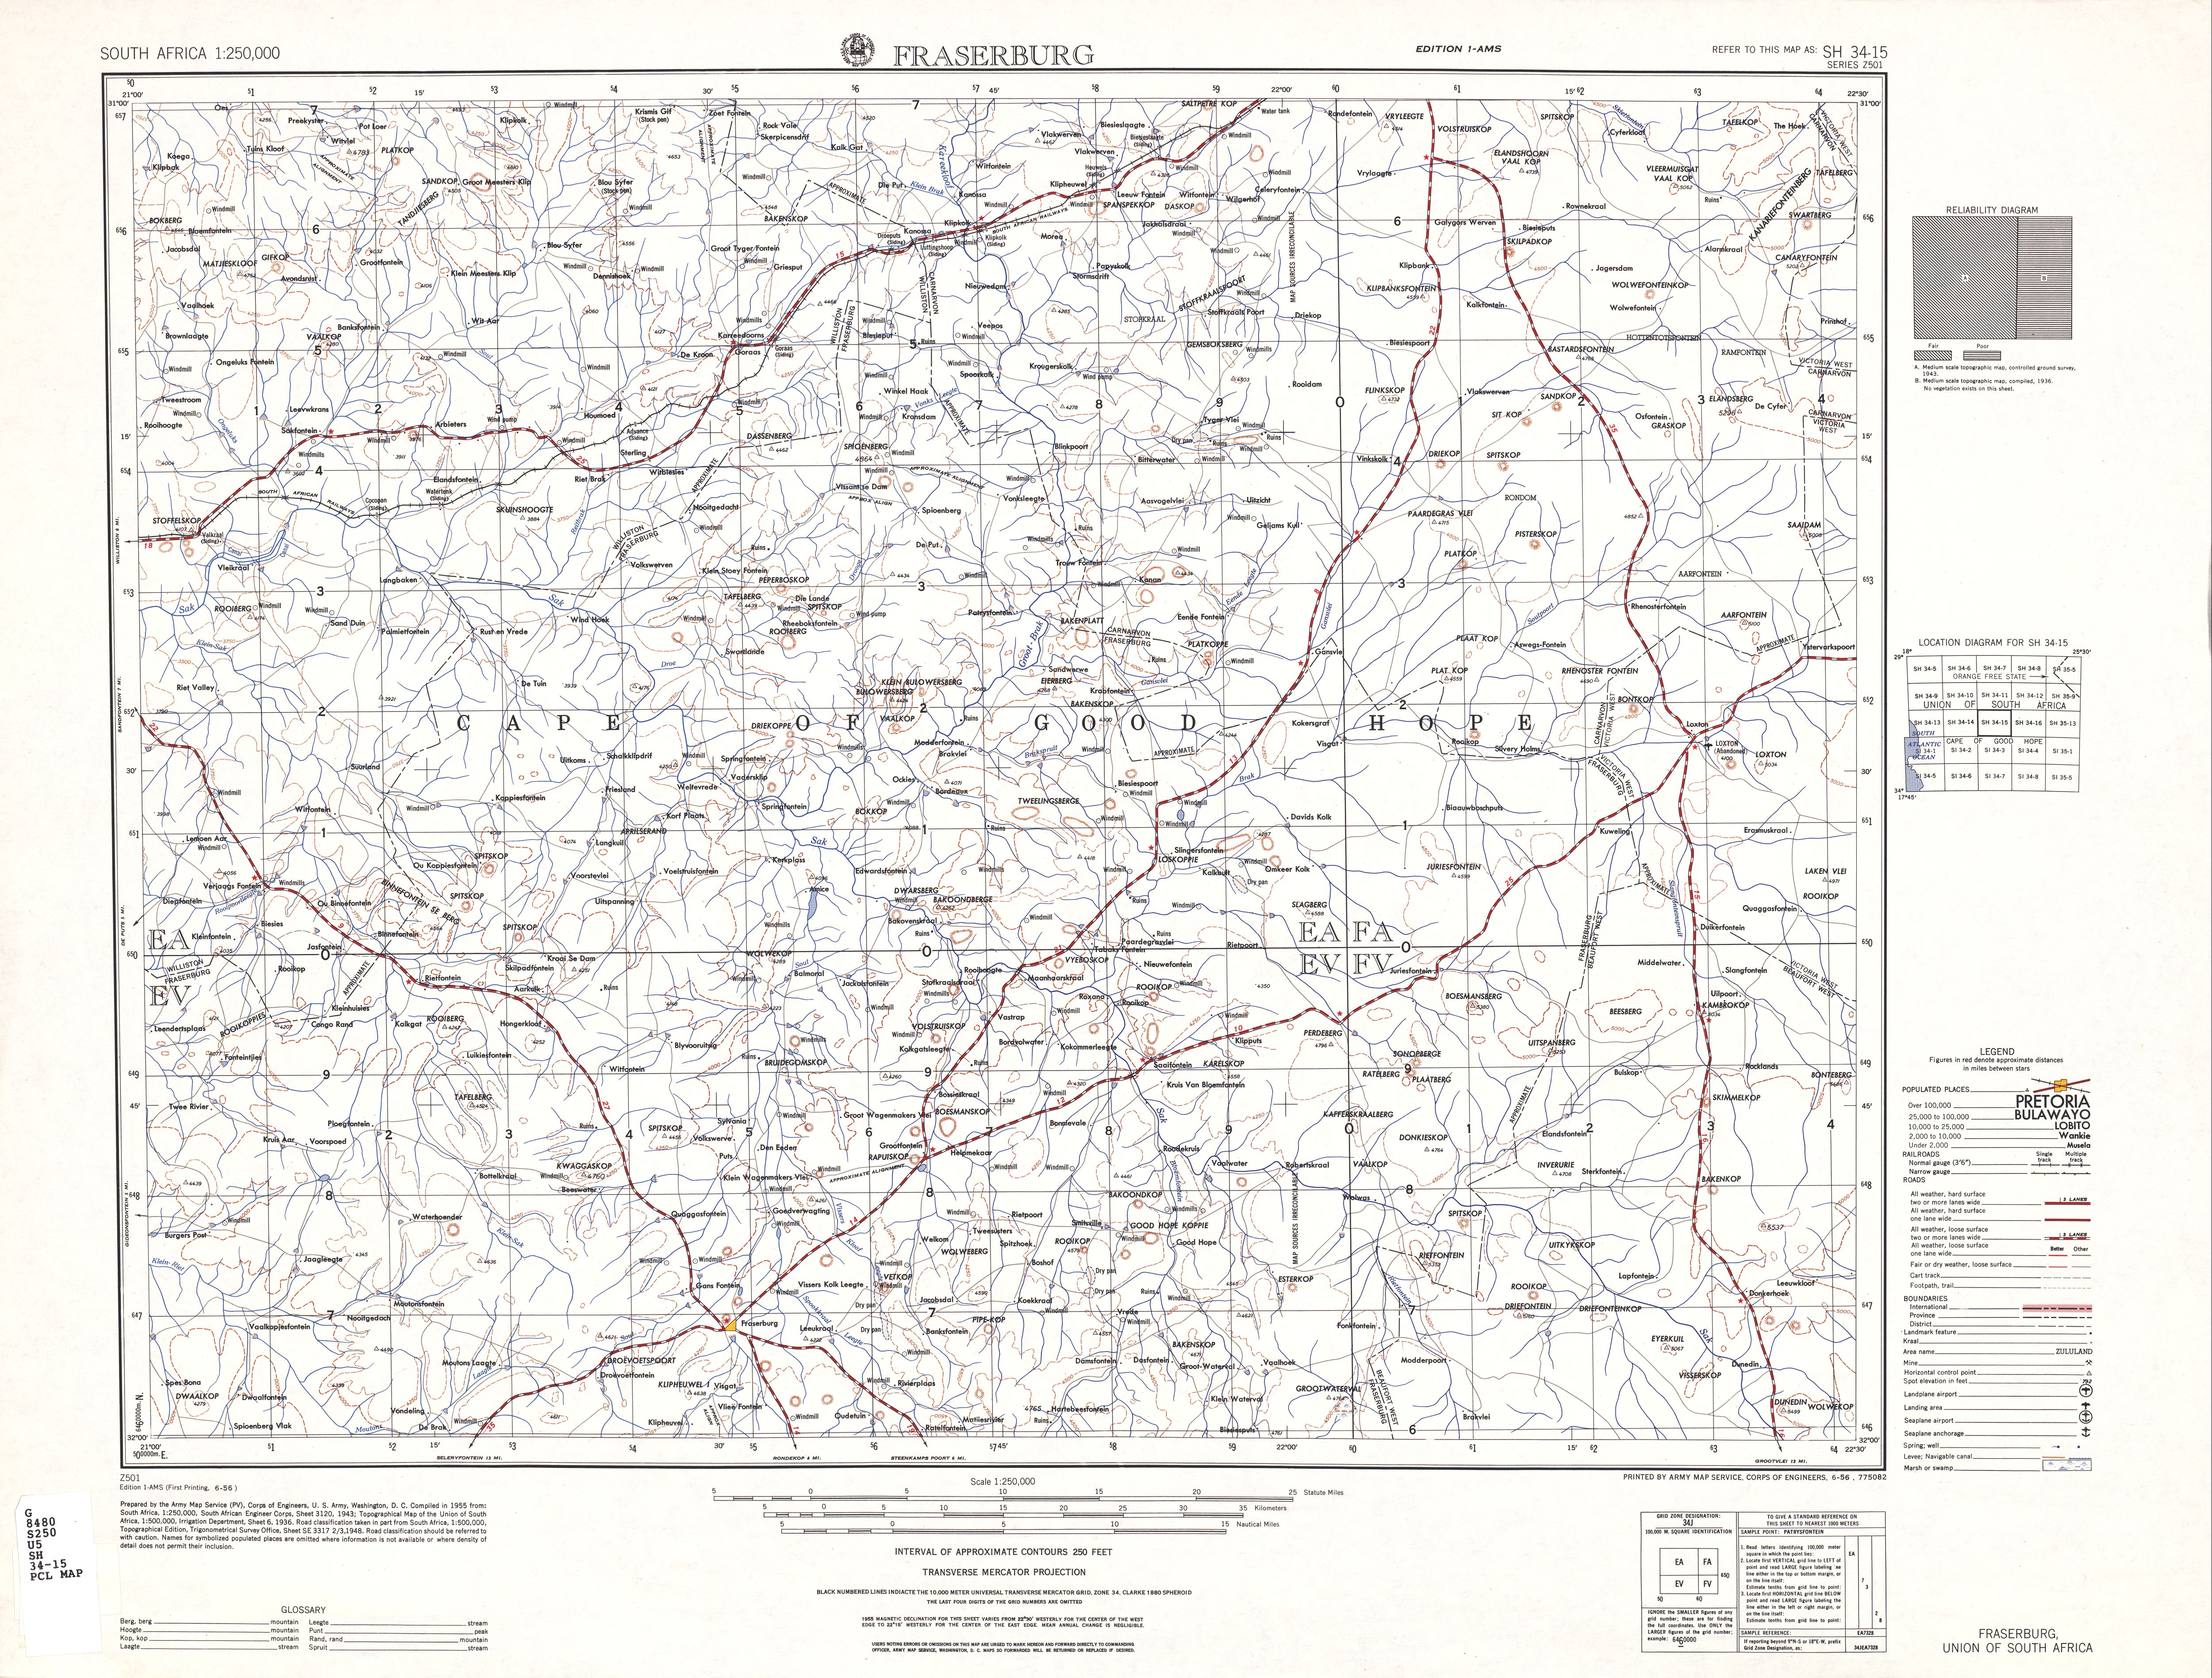 Hoja Fraserburg del Mapa Topográfico de África Meridional 1954